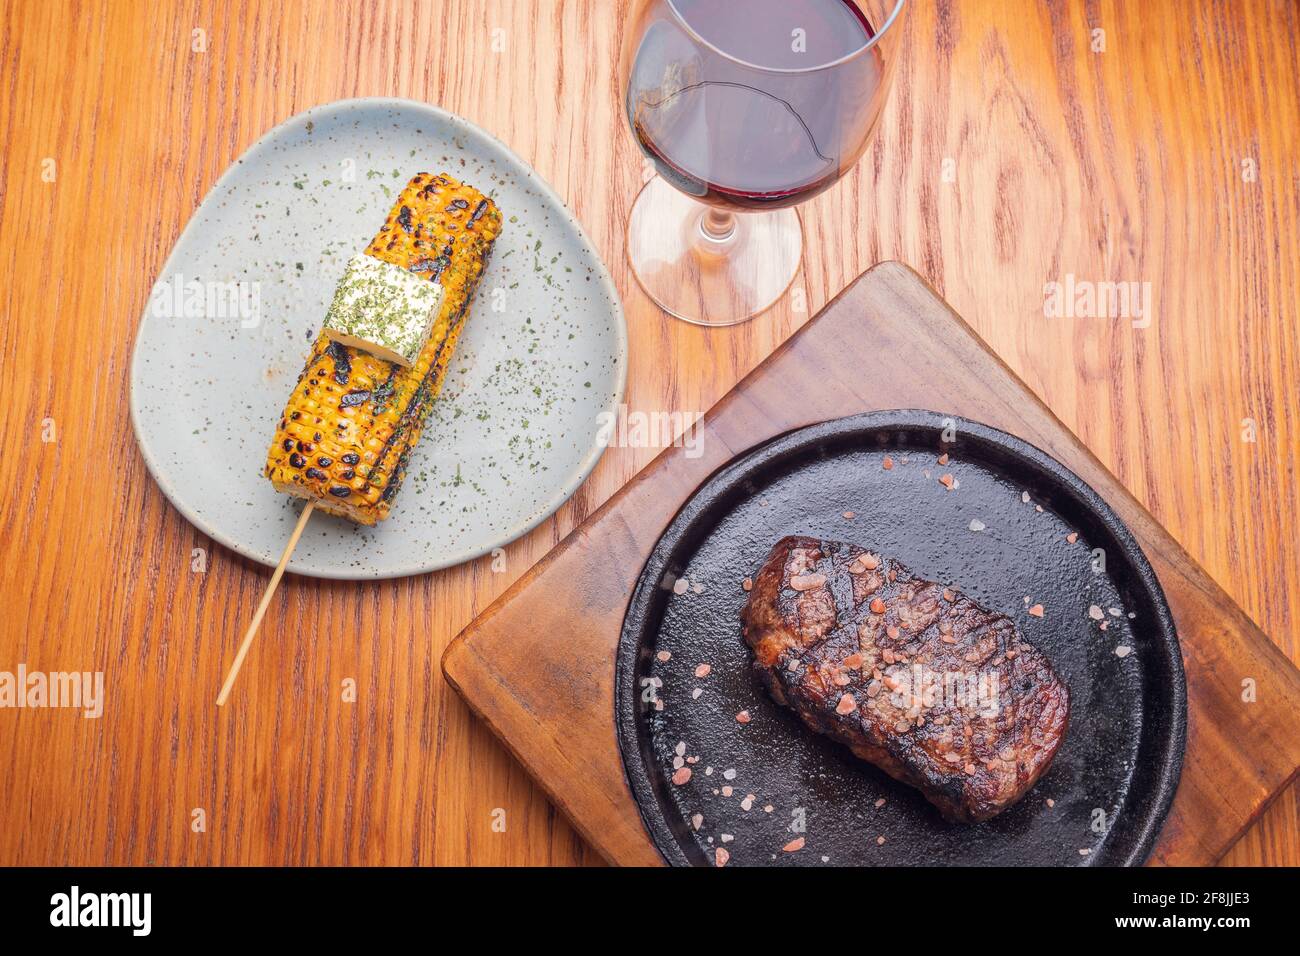 Steak grillé et garniture de maïs jaune sur une table en bois. Cuisine gastronomique. Banque D'Images